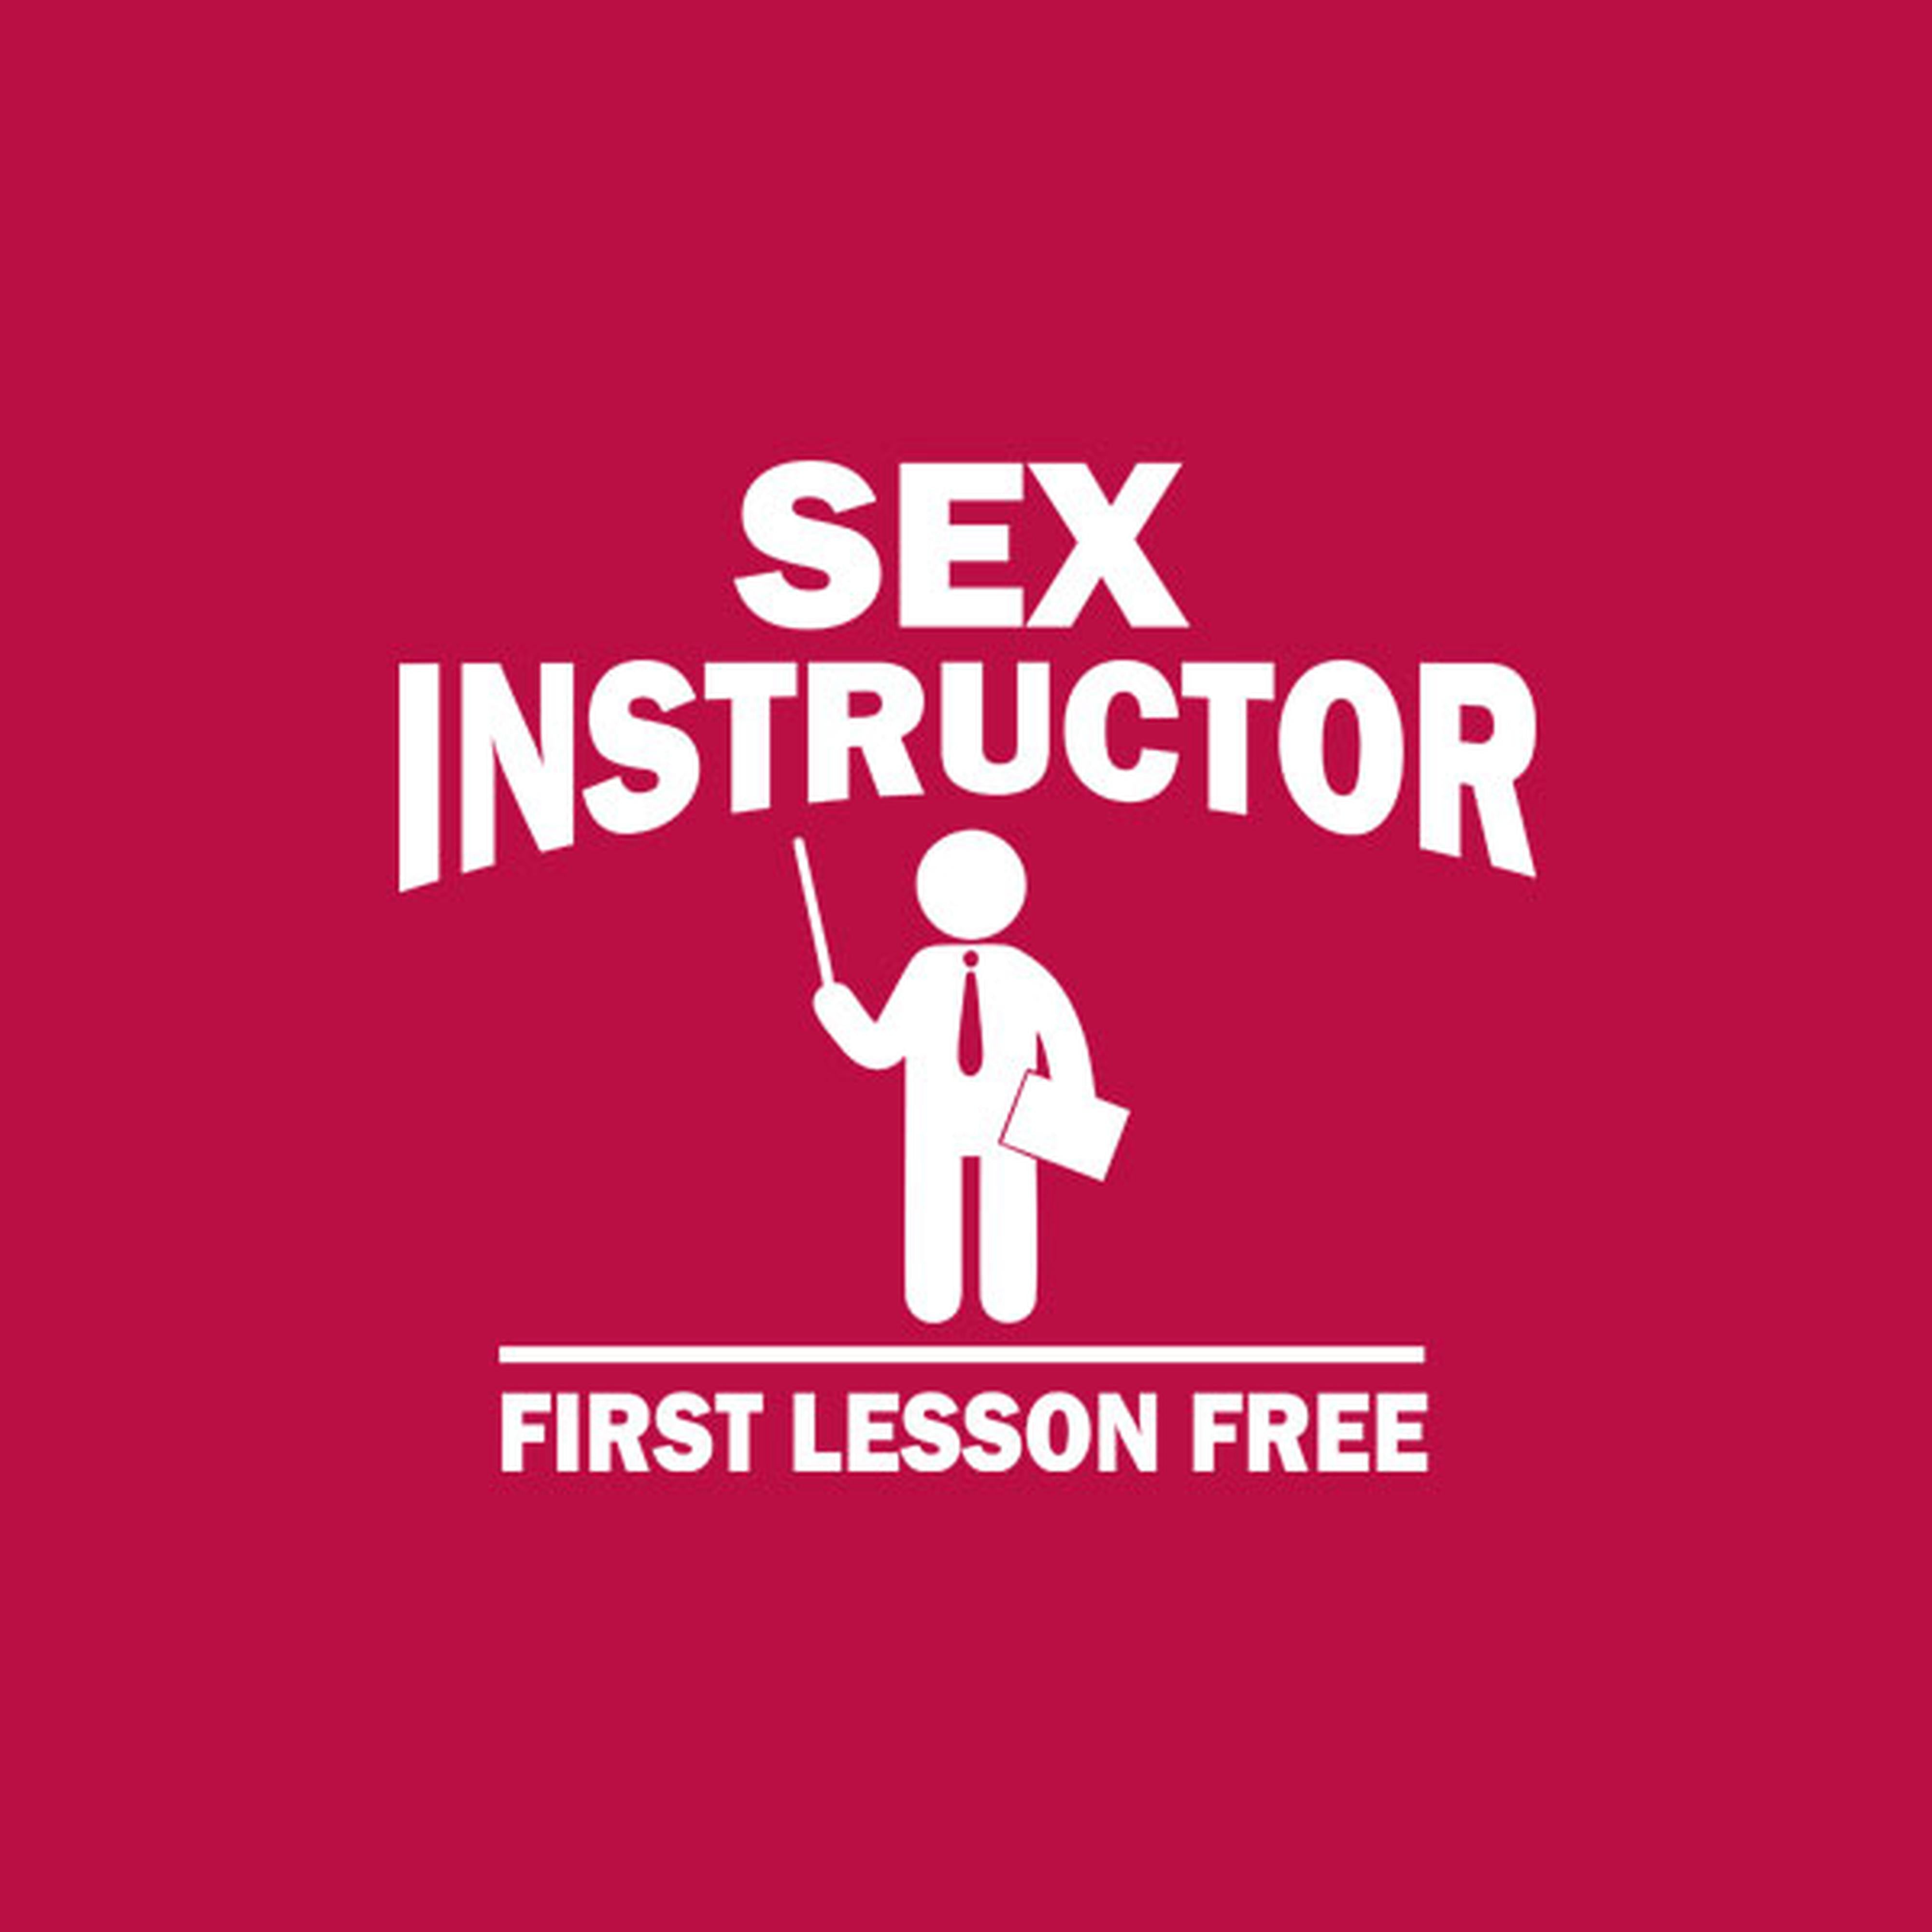 Sex instructor - T-shirt